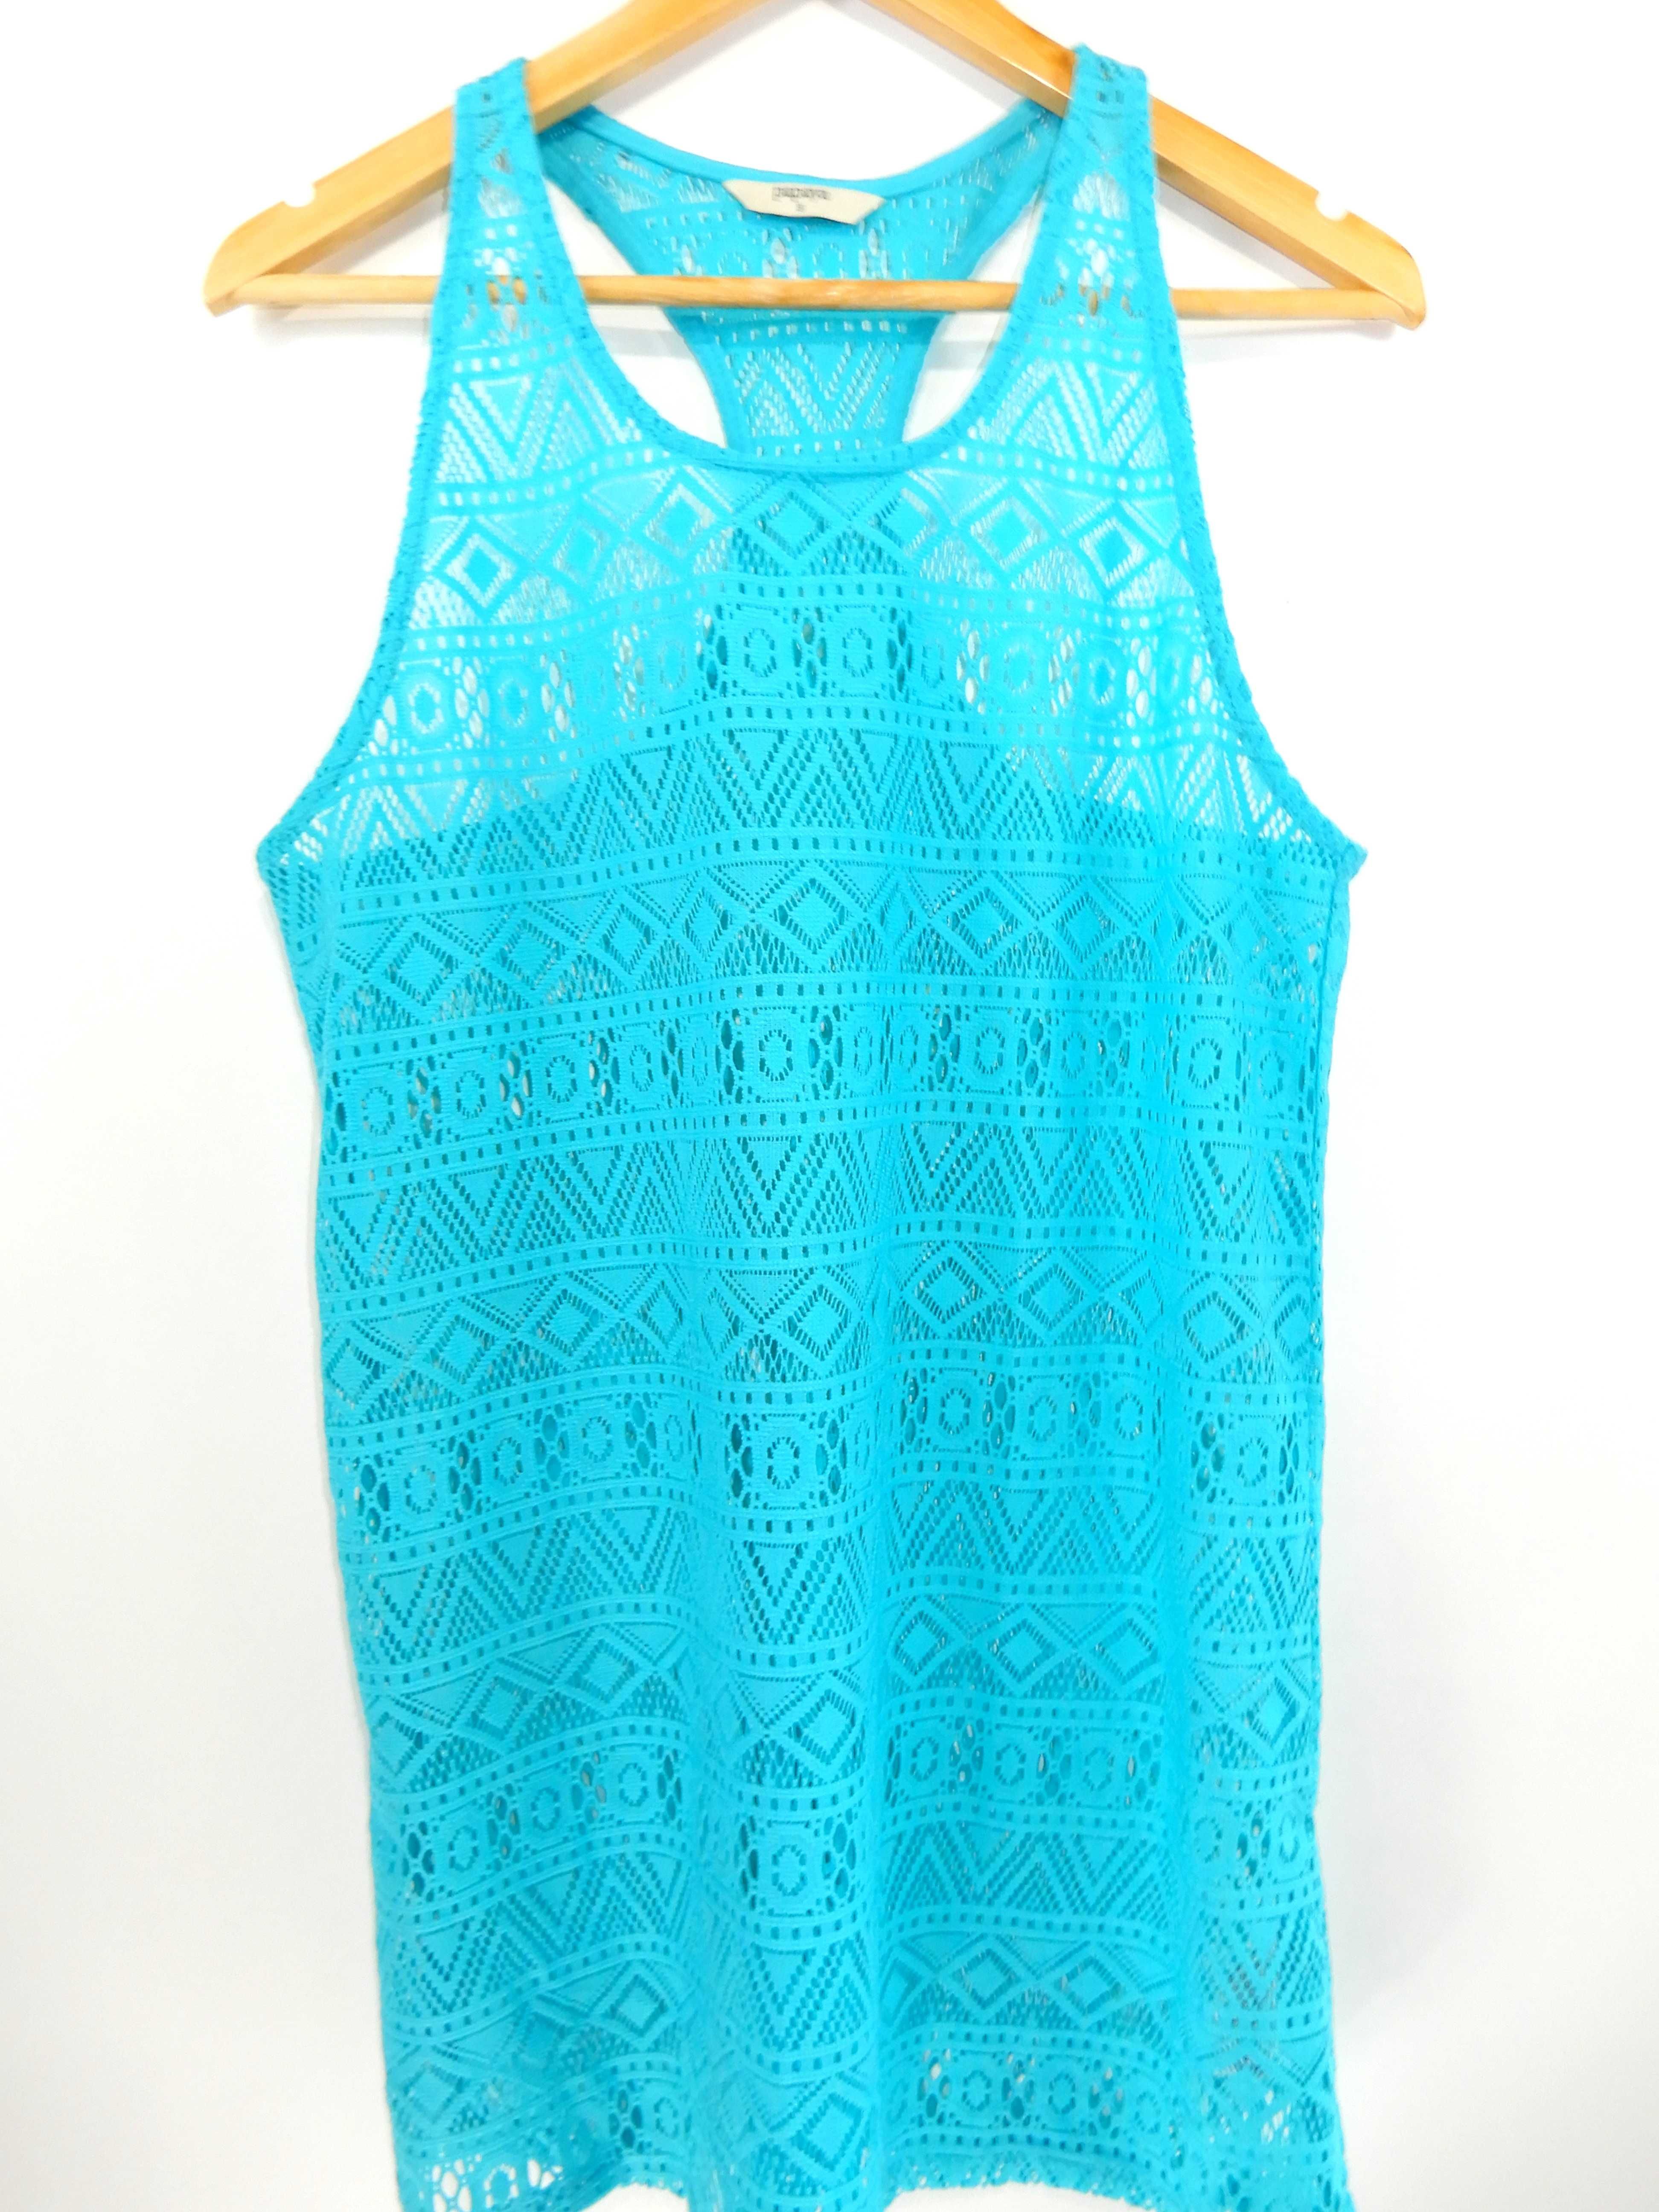 Sukienka tunika ażurowa plażowa niebieska wzór Papaya 36 S